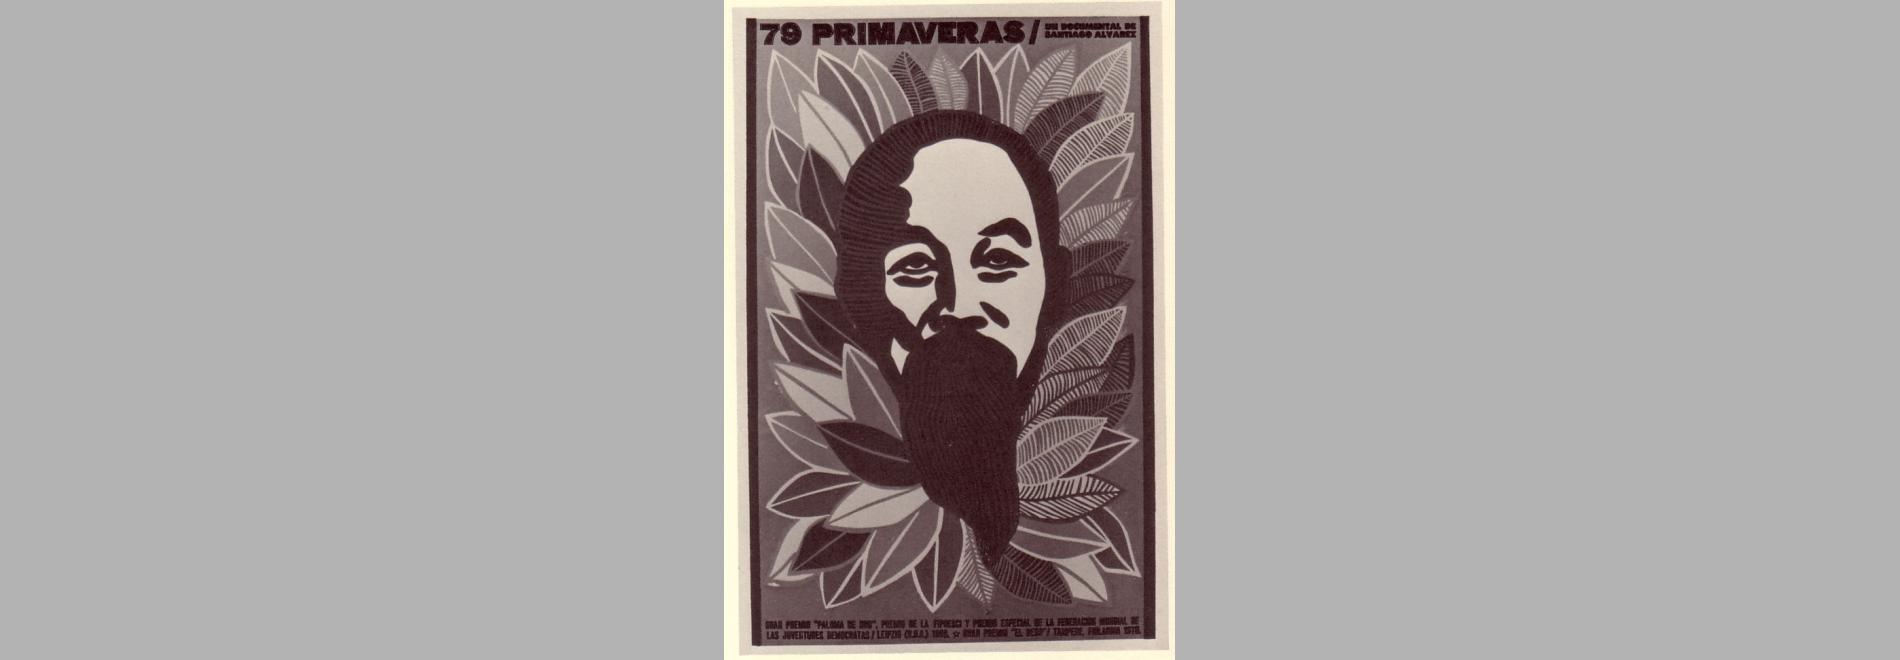 79 primaveras (Santiago Álvarez, 1969)